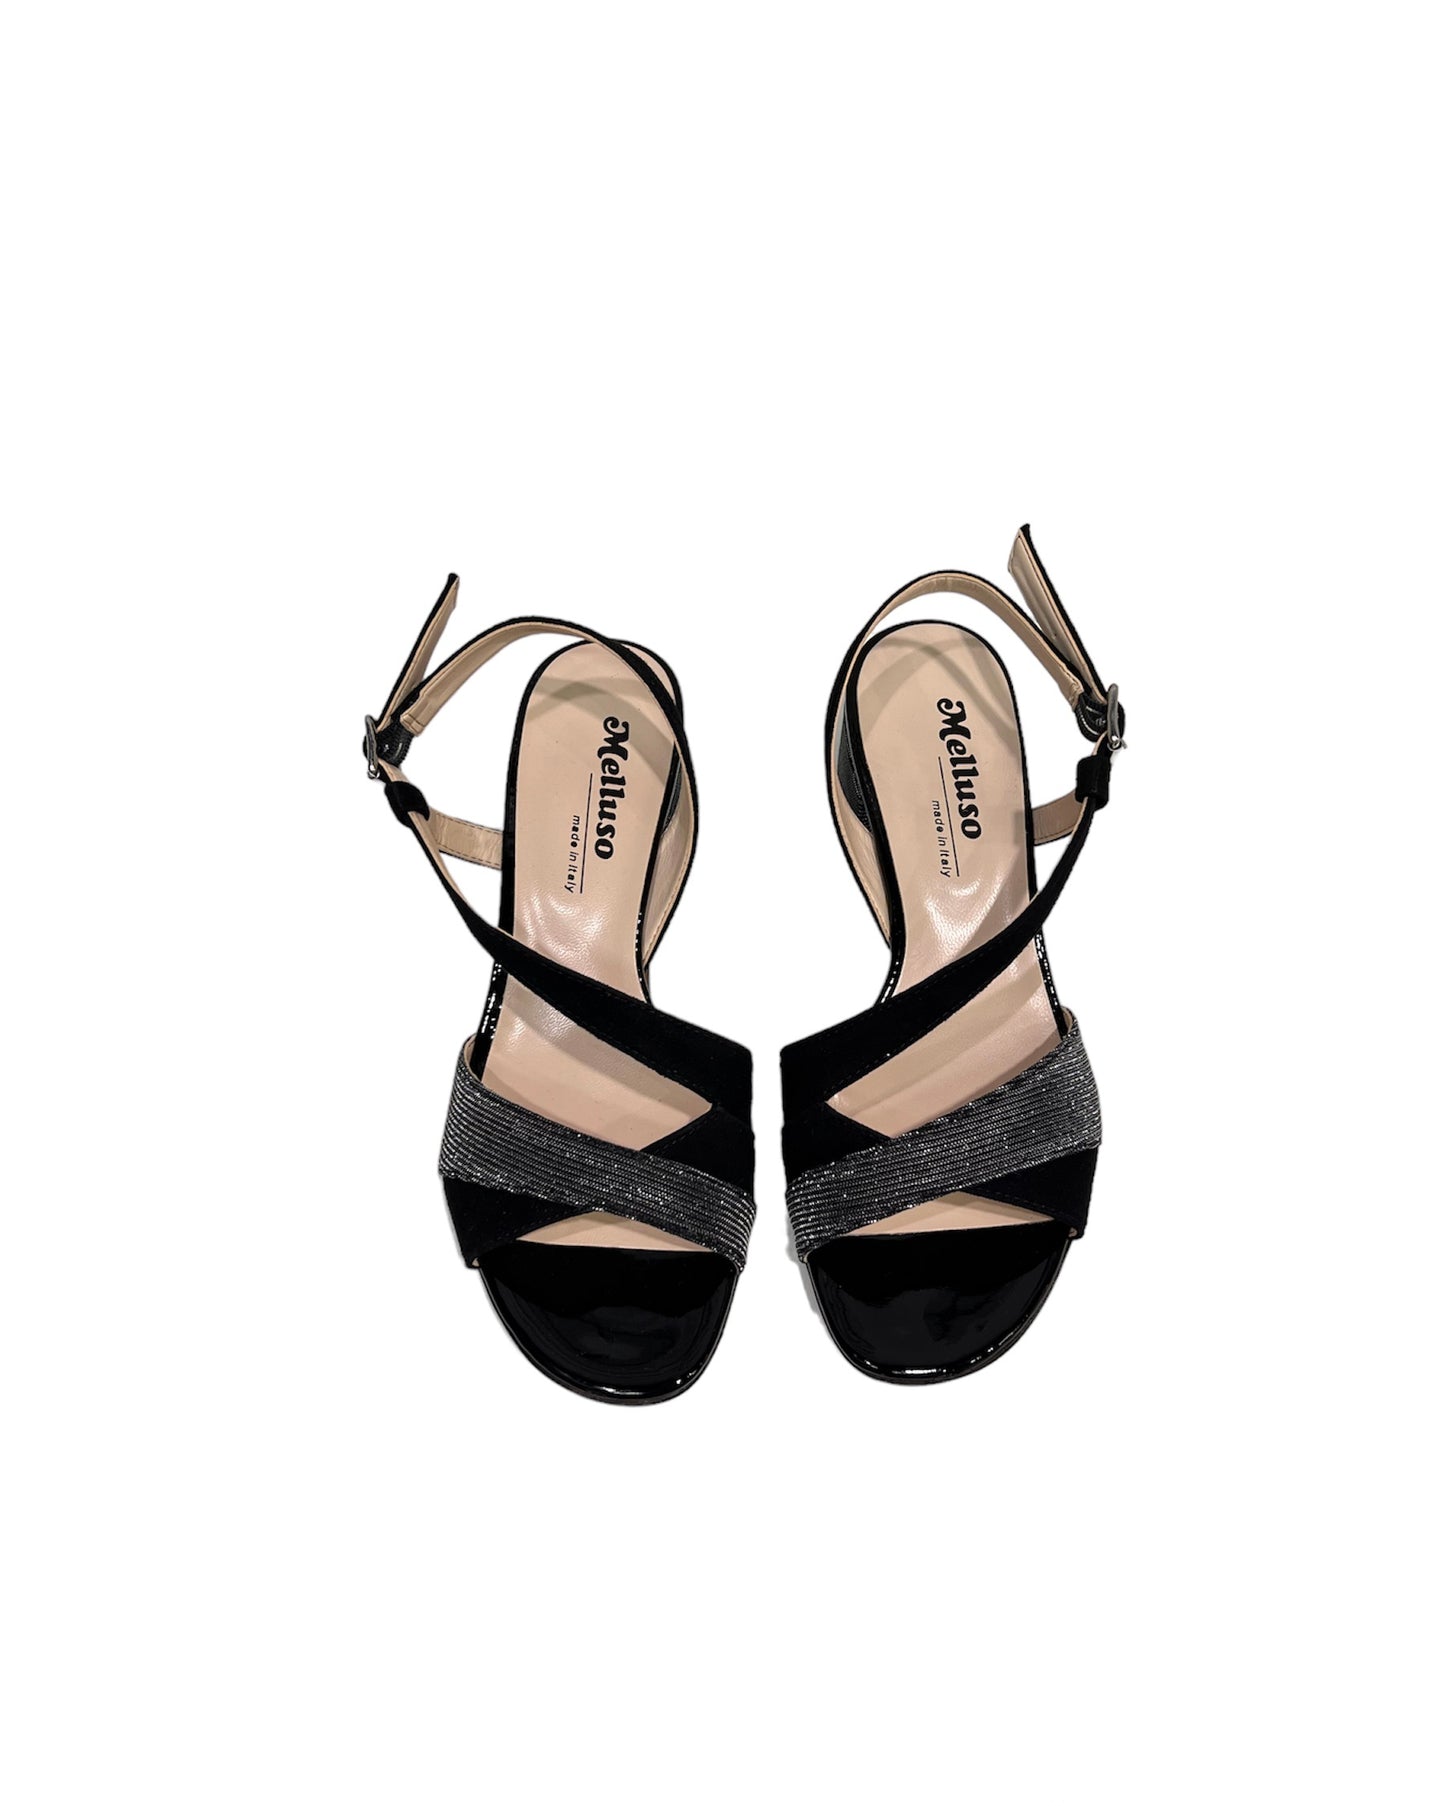 Sandalo con tacco 5 cm nero Melluso -K35157D